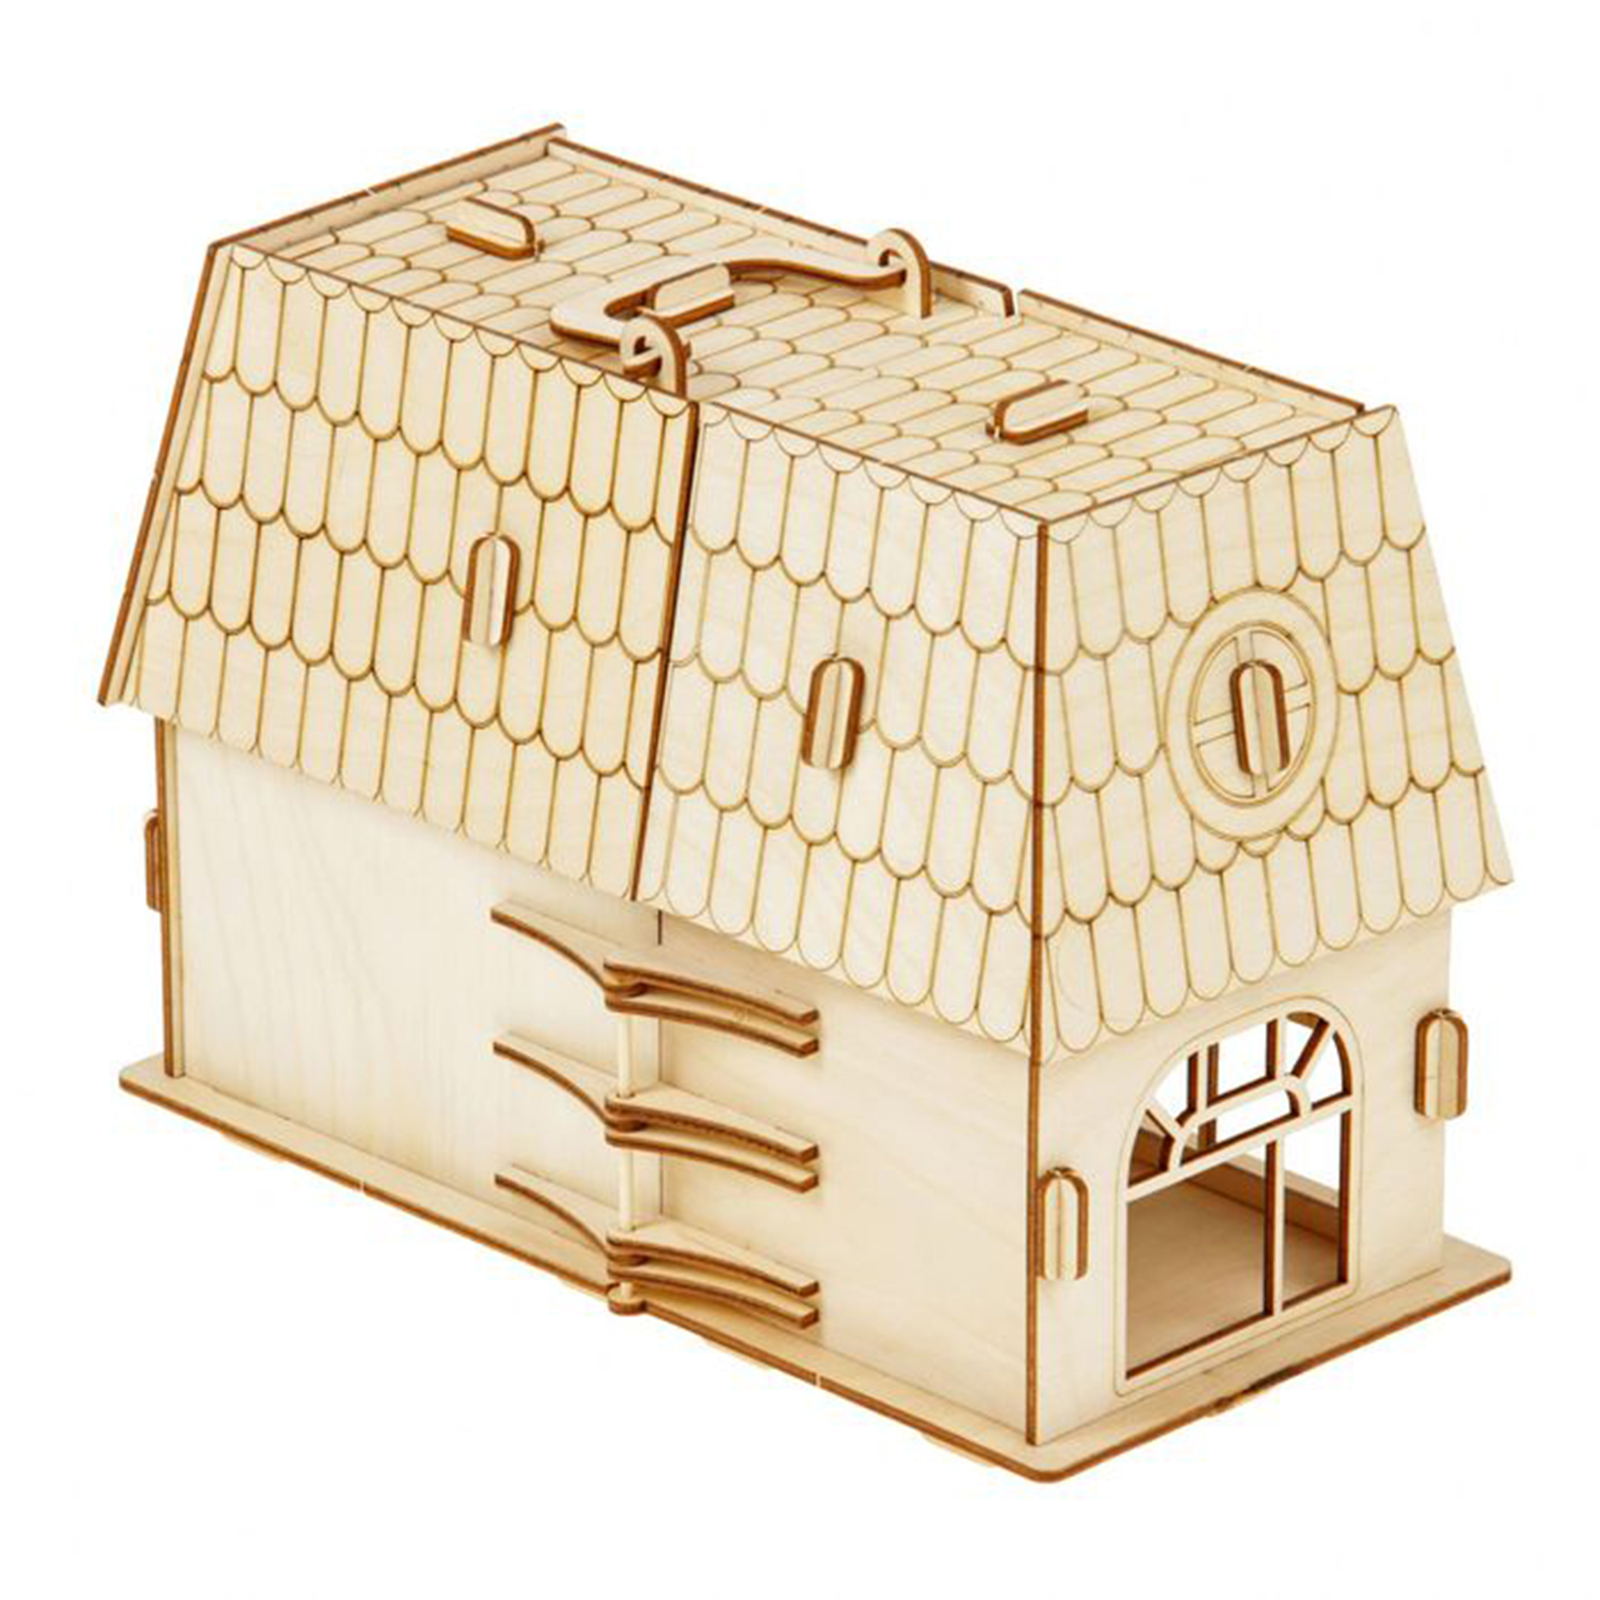 Сборные модели домов. Кукольный домик деревянный конструктор (пр.большой слон). Домик деревянный сборная модель. Сборный деревянный домик конструктор. Модели деревянных домиков.